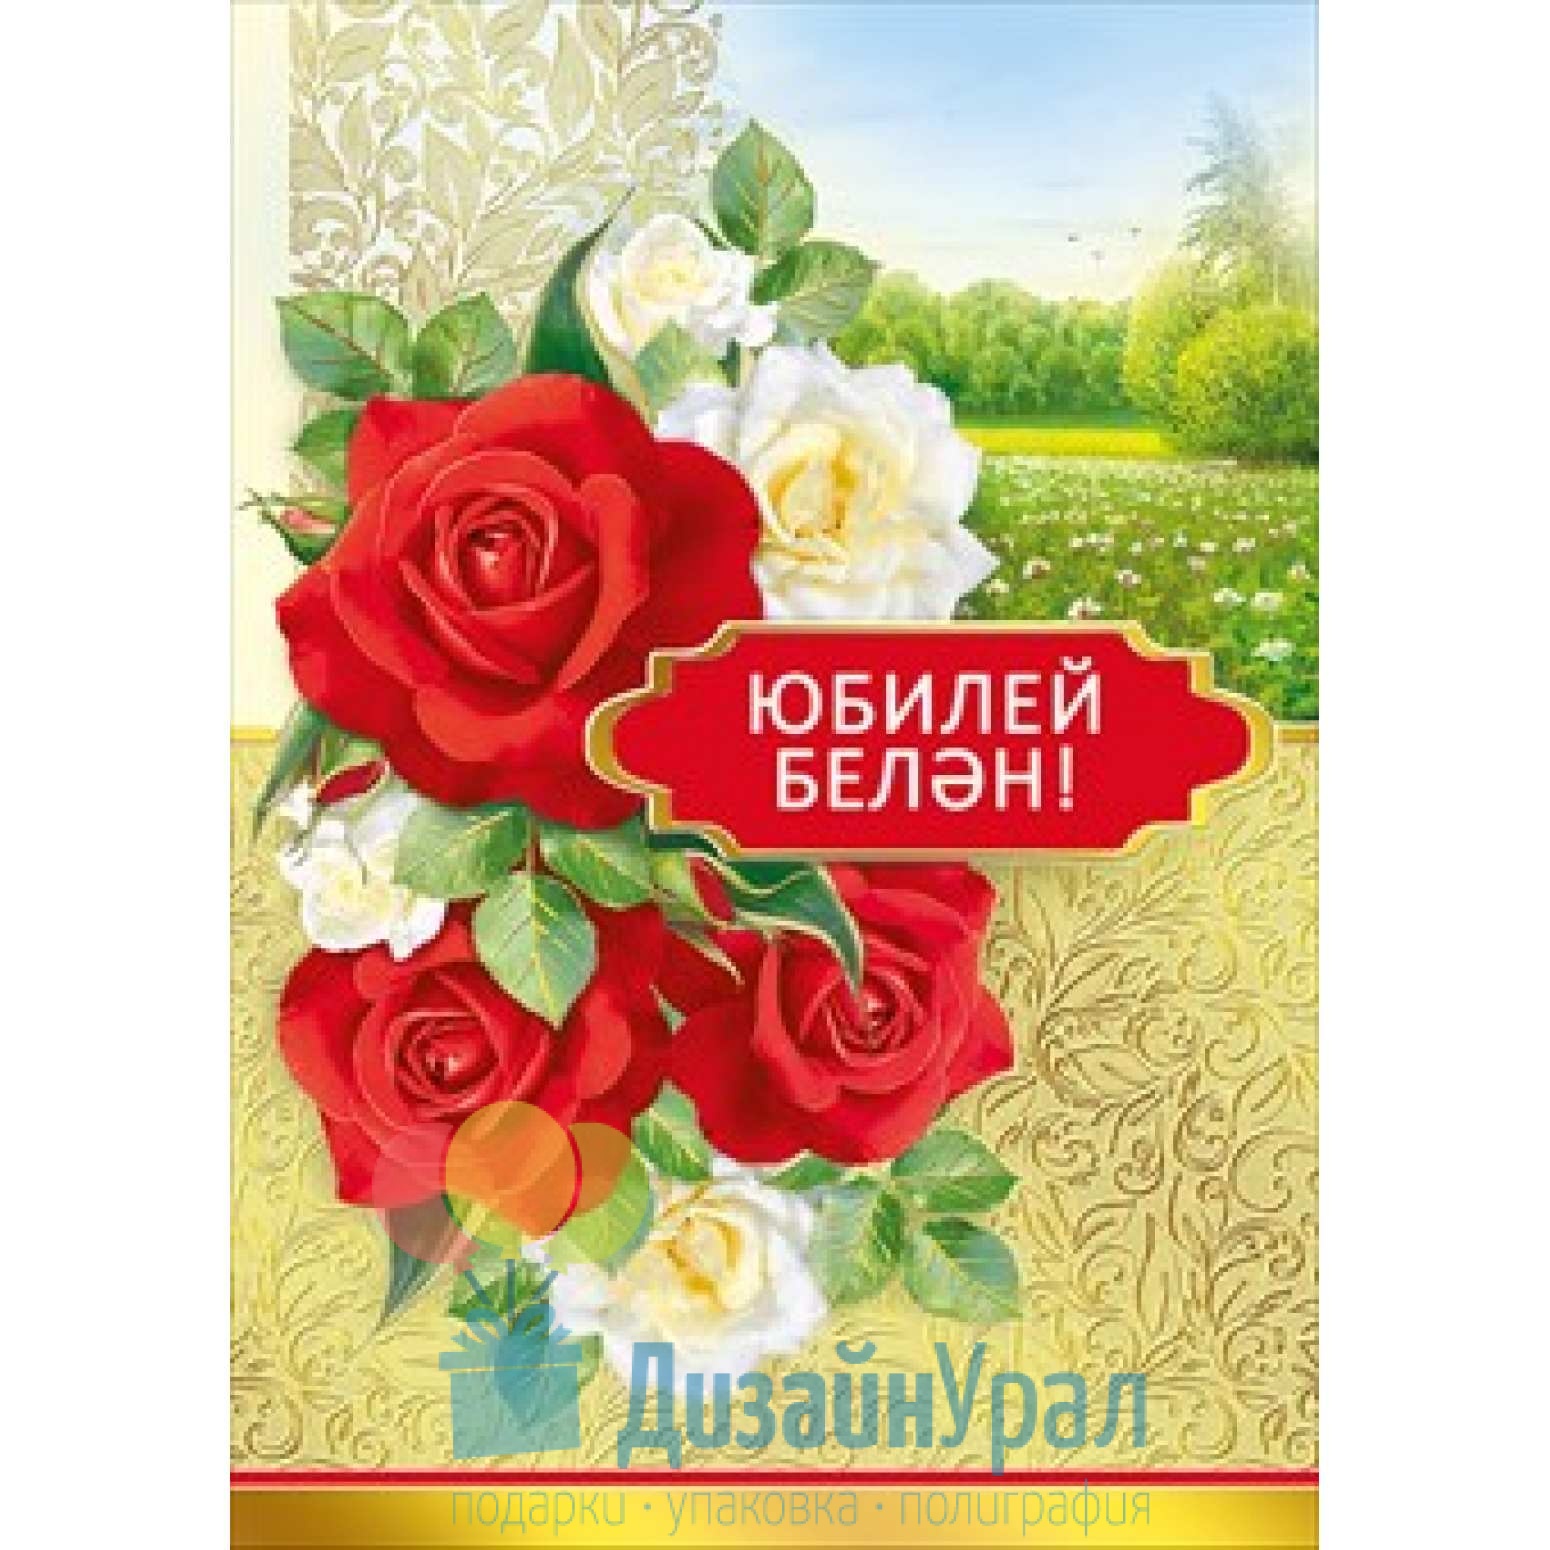 Поздравления с юбилеем женщине на татарском